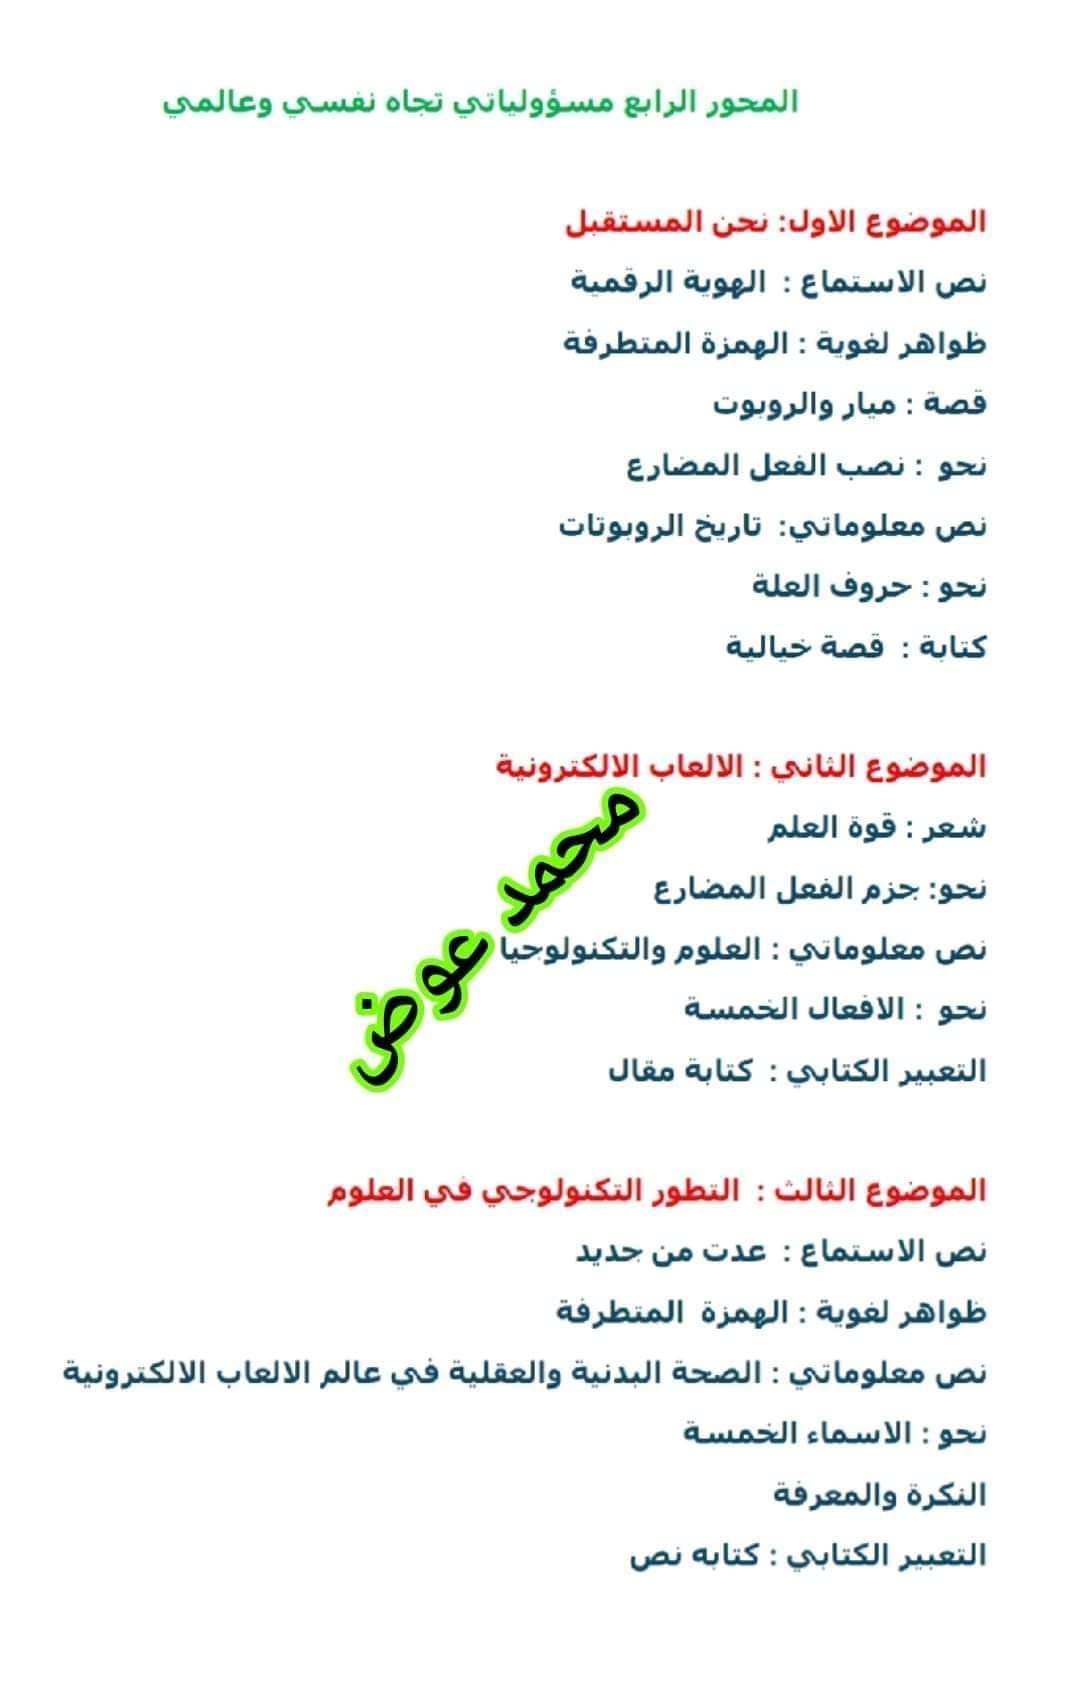 دروس اللغة العربية المقررة للصف السادس الابتدائي الترم الثاني